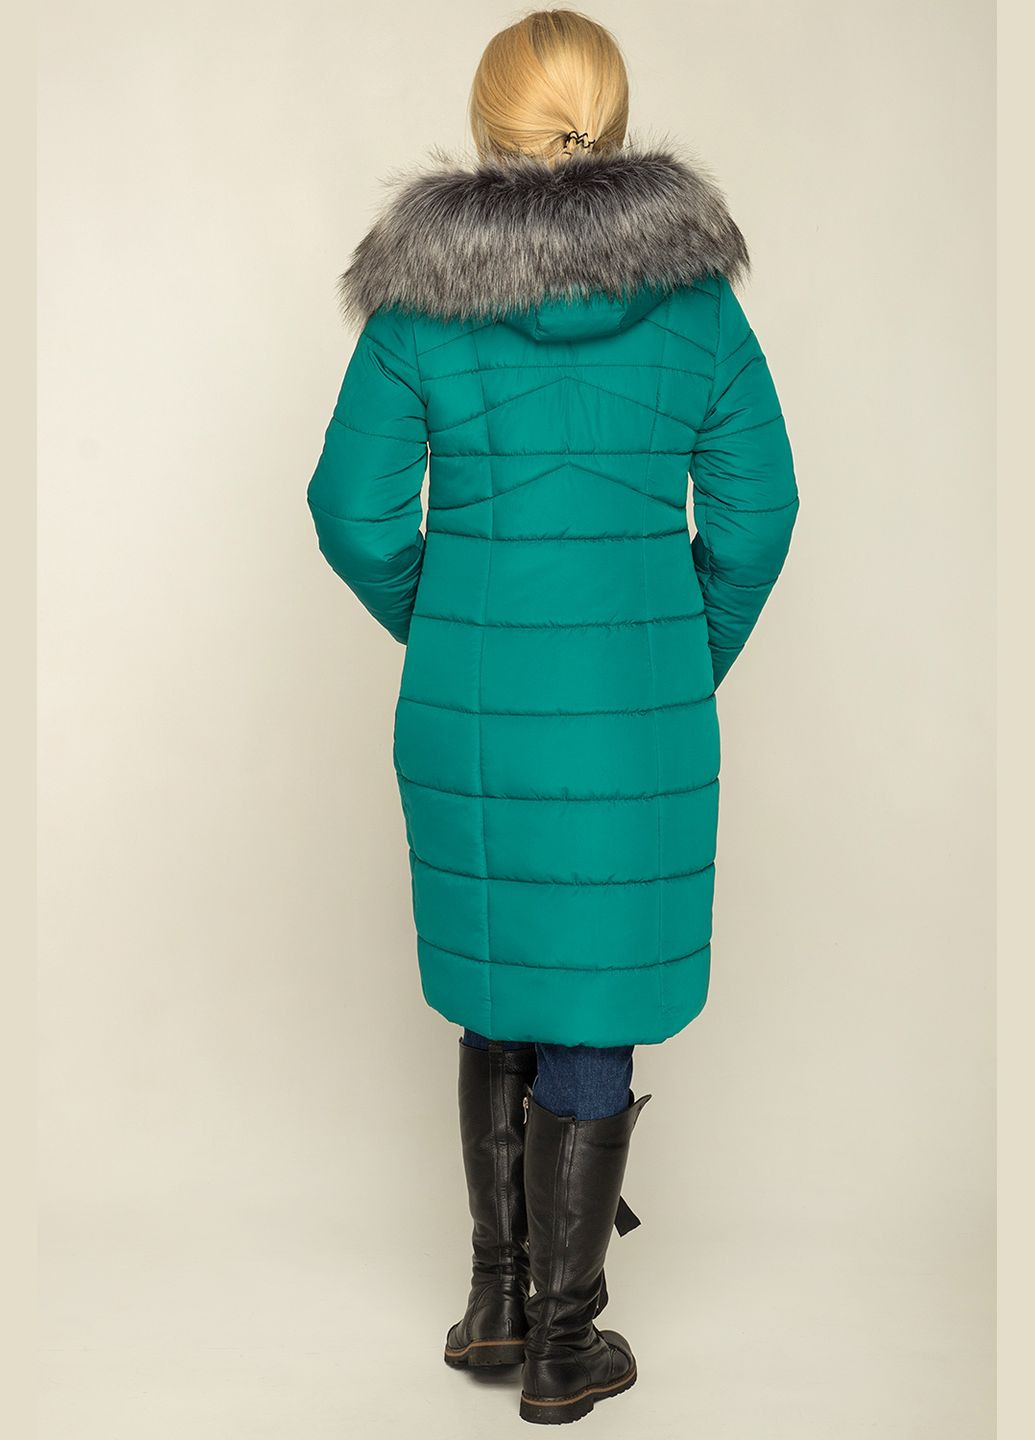 Изумрудная зимняя зимняя куртка miranda изумруд MioRichi